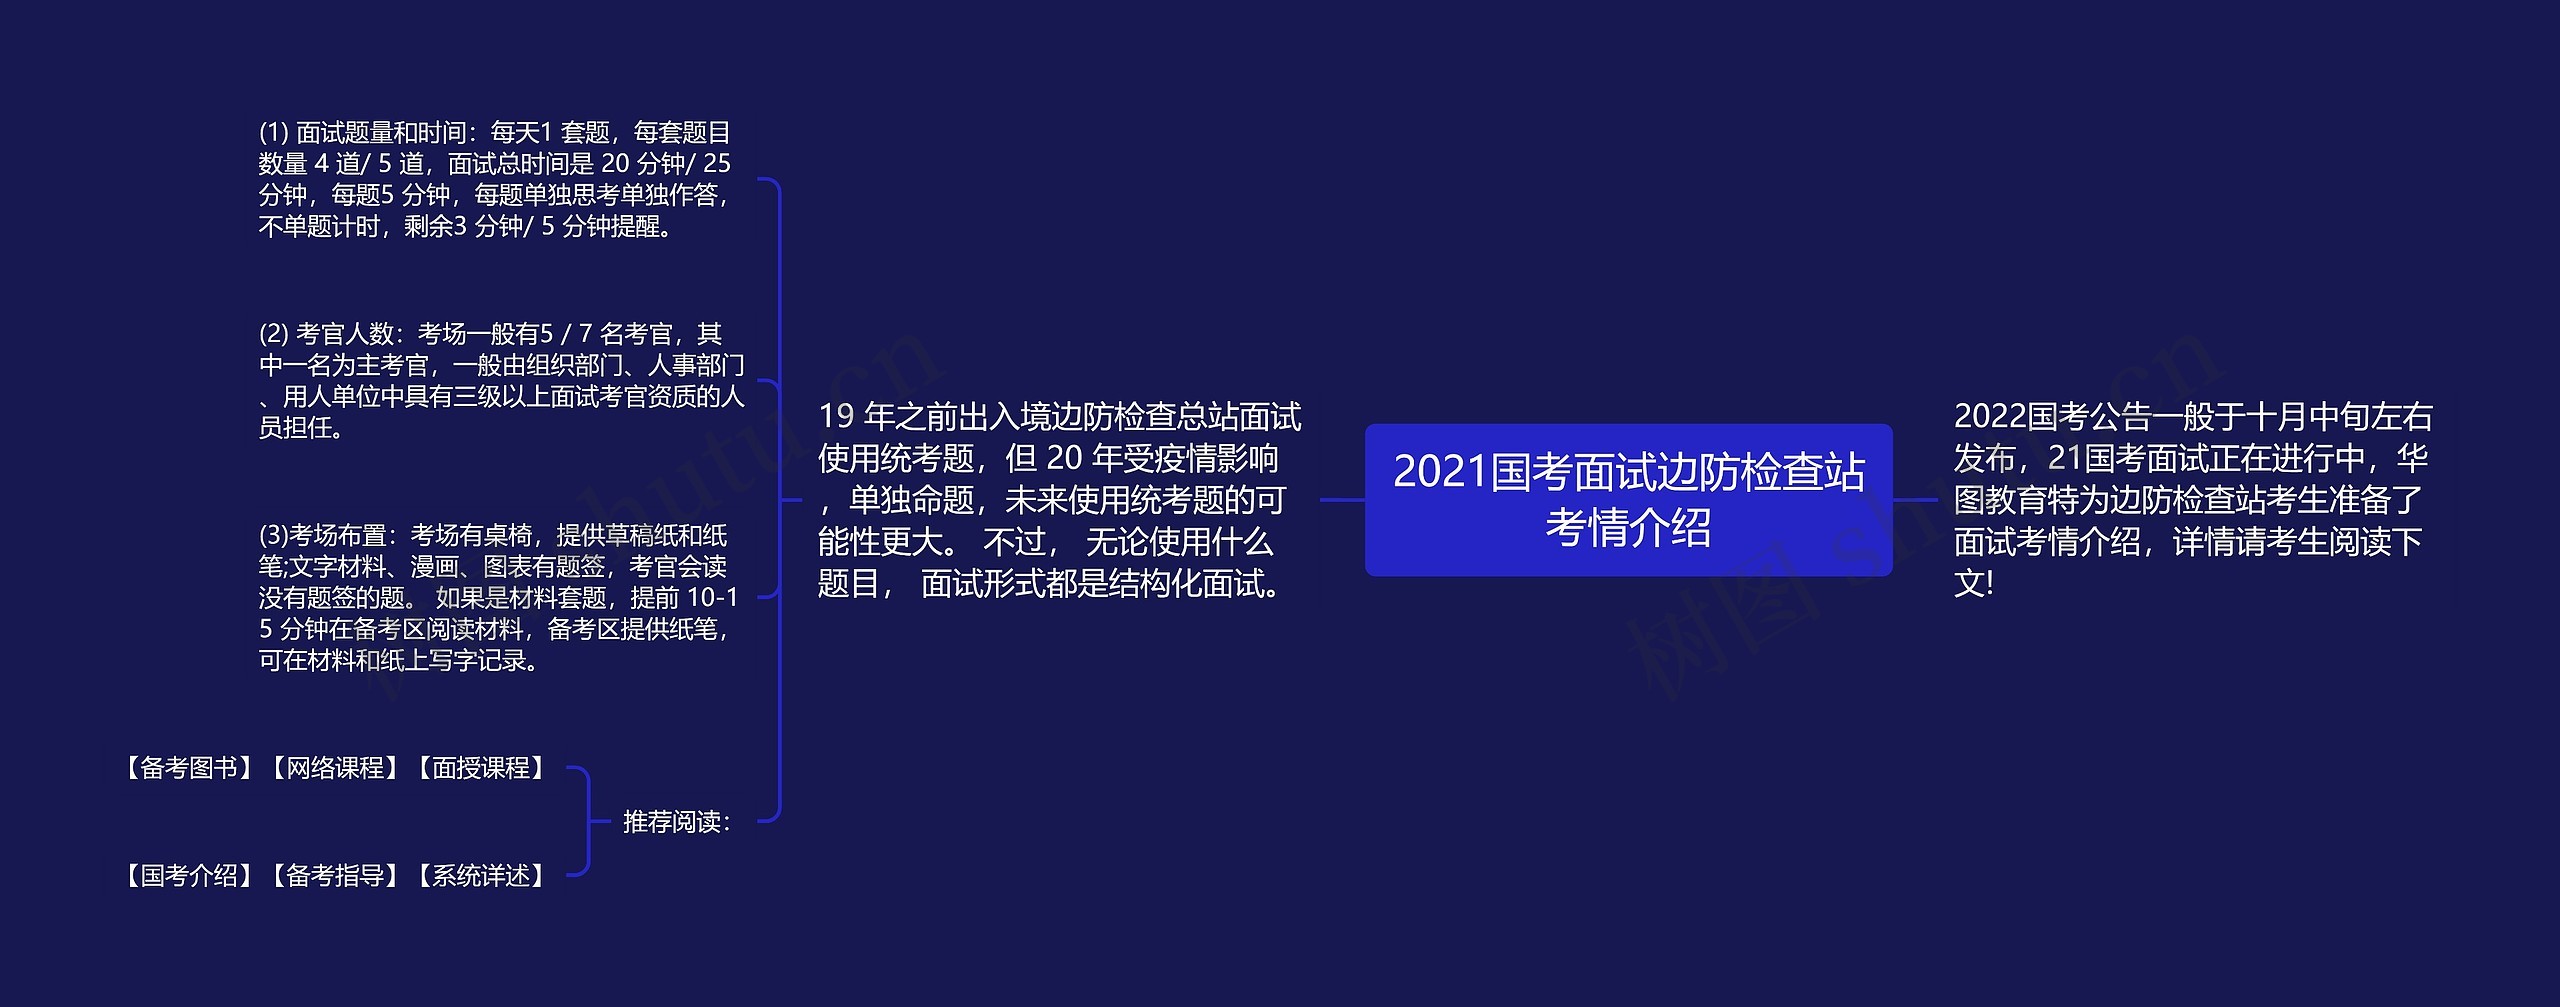 2021国考面试边防检查站考情介绍